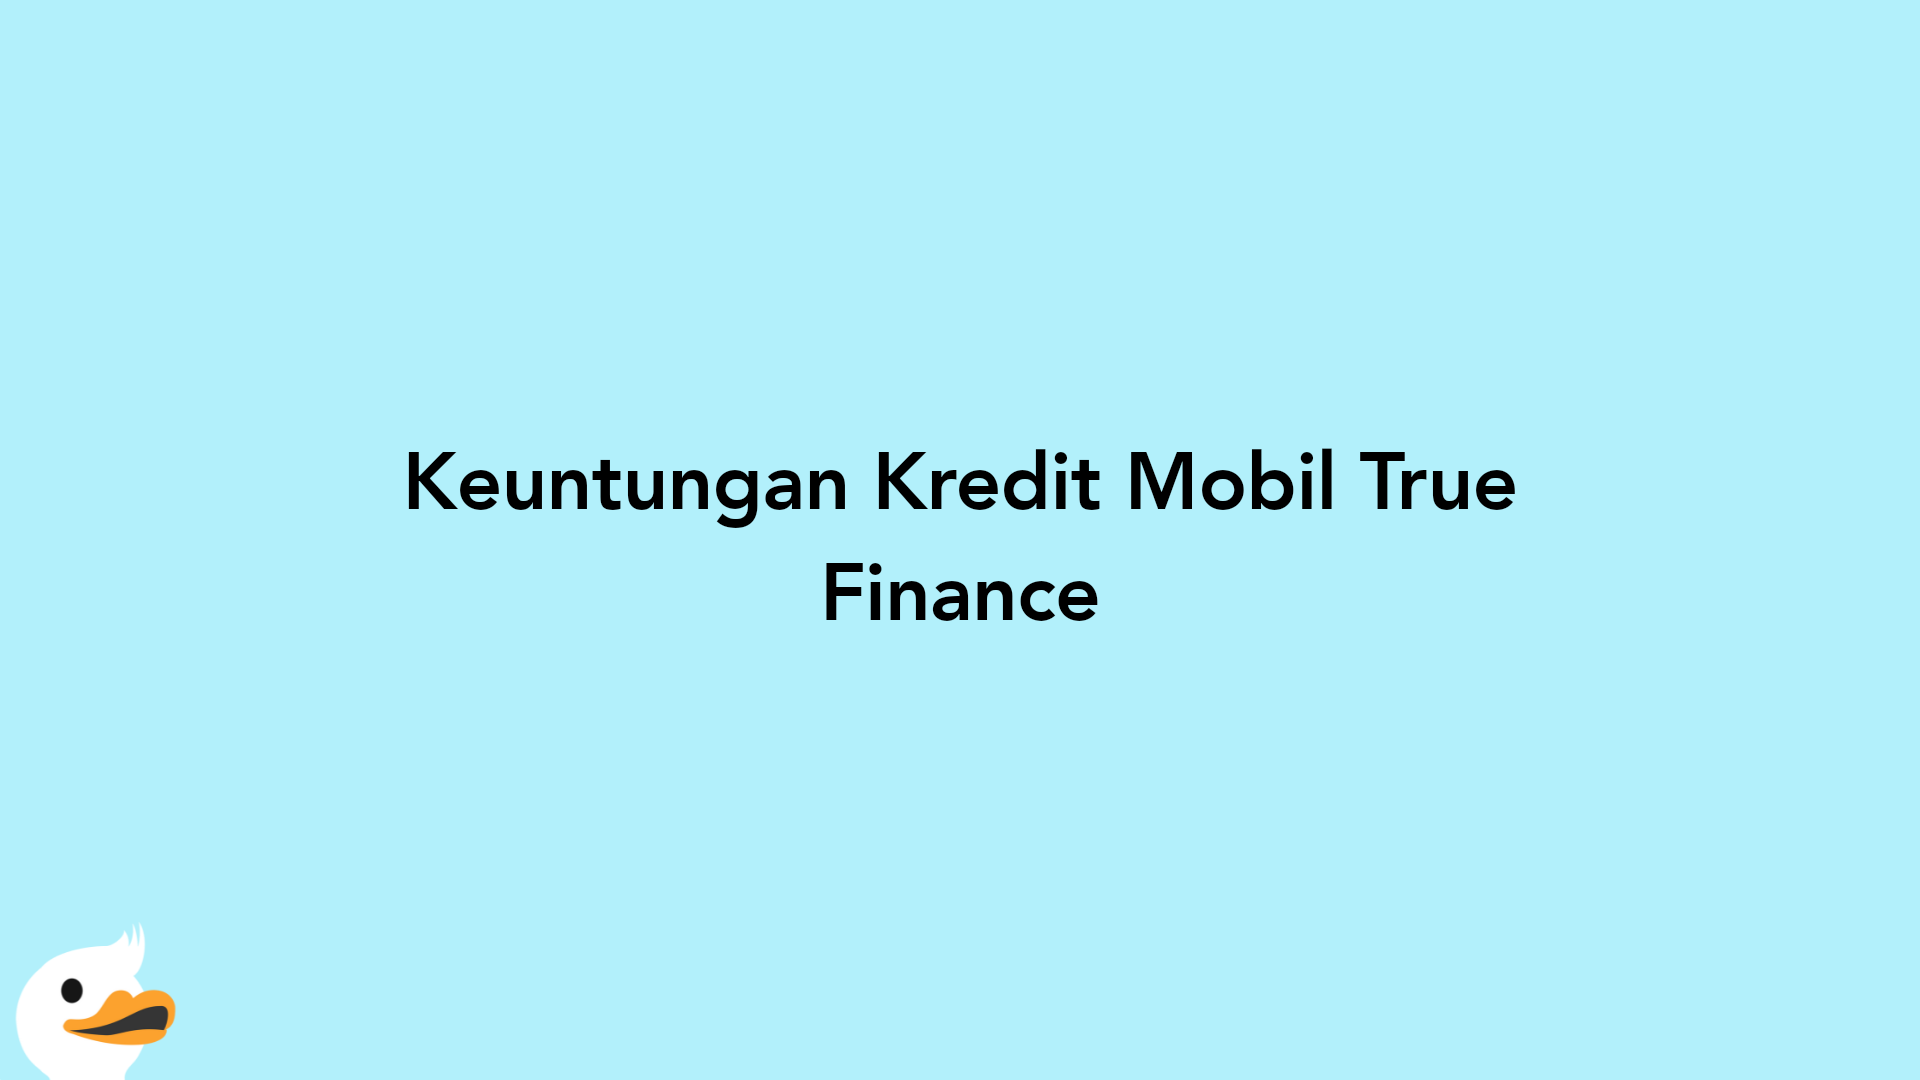 Keuntungan Kredit Mobil True Finance